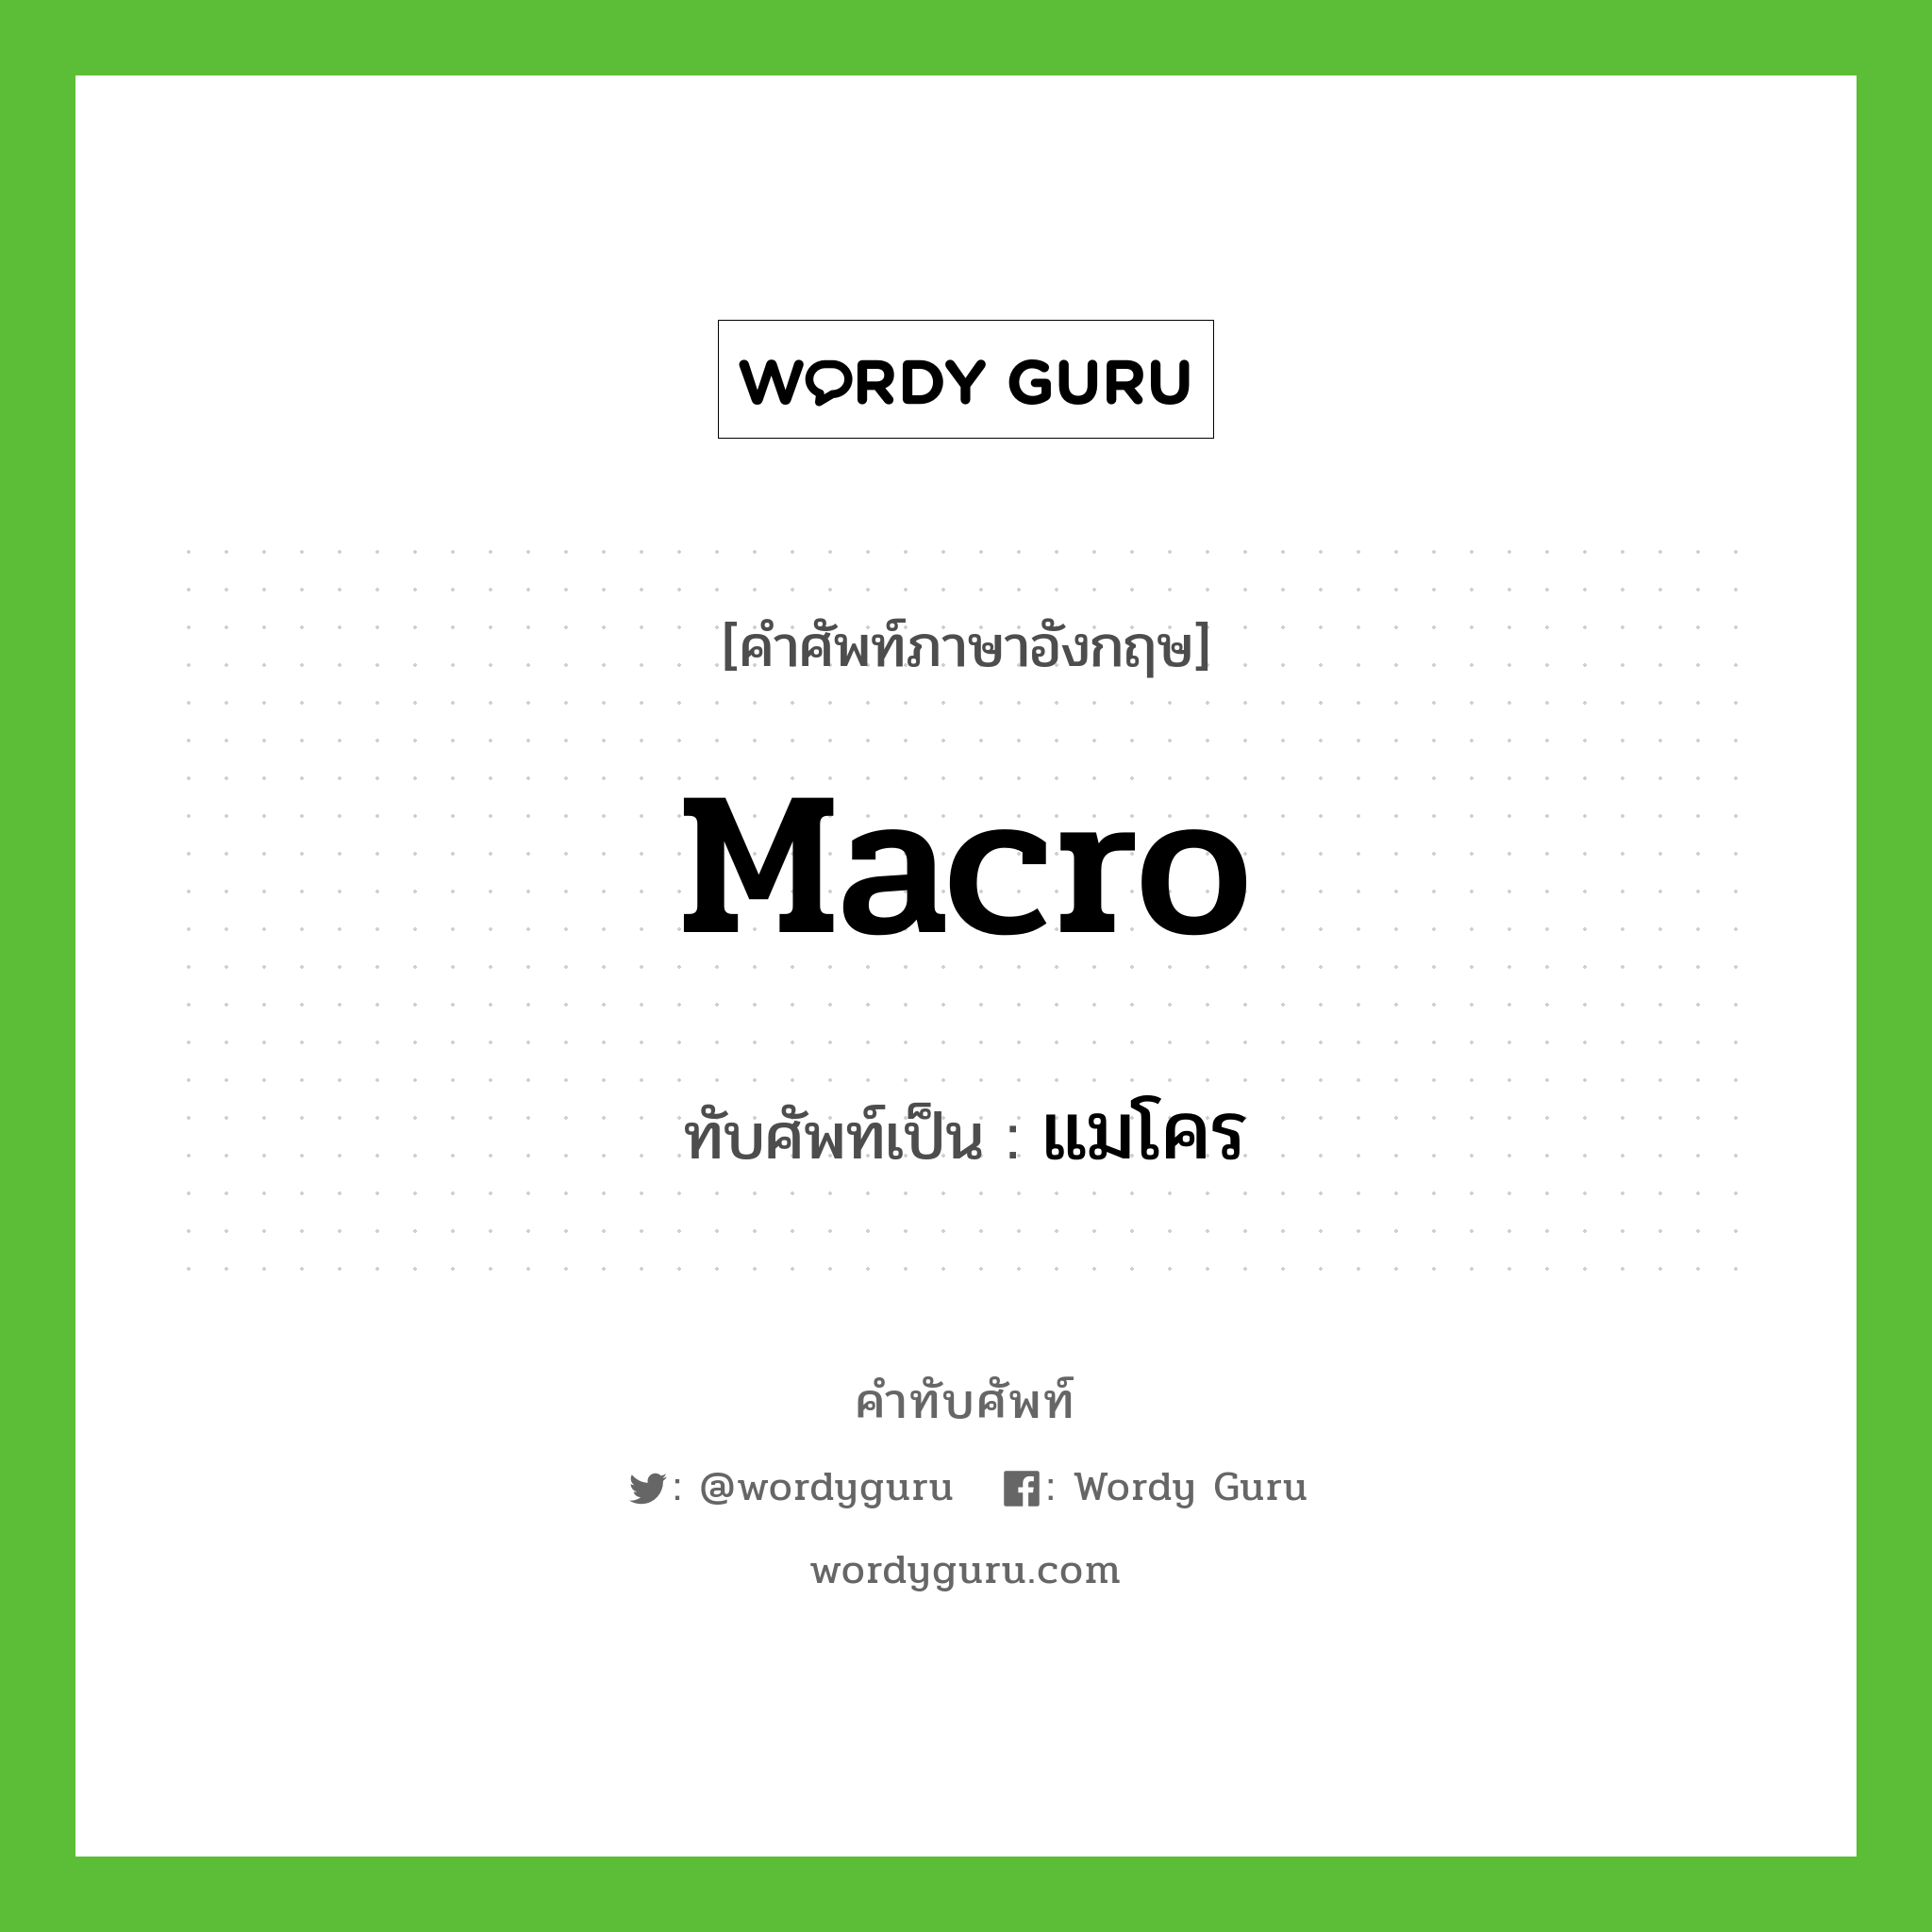 macro เขียนเป็นคำไทยว่าอะไร?, คำศัพท์ภาษาอังกฤษ macro ทับศัพท์เป็น แมโคร